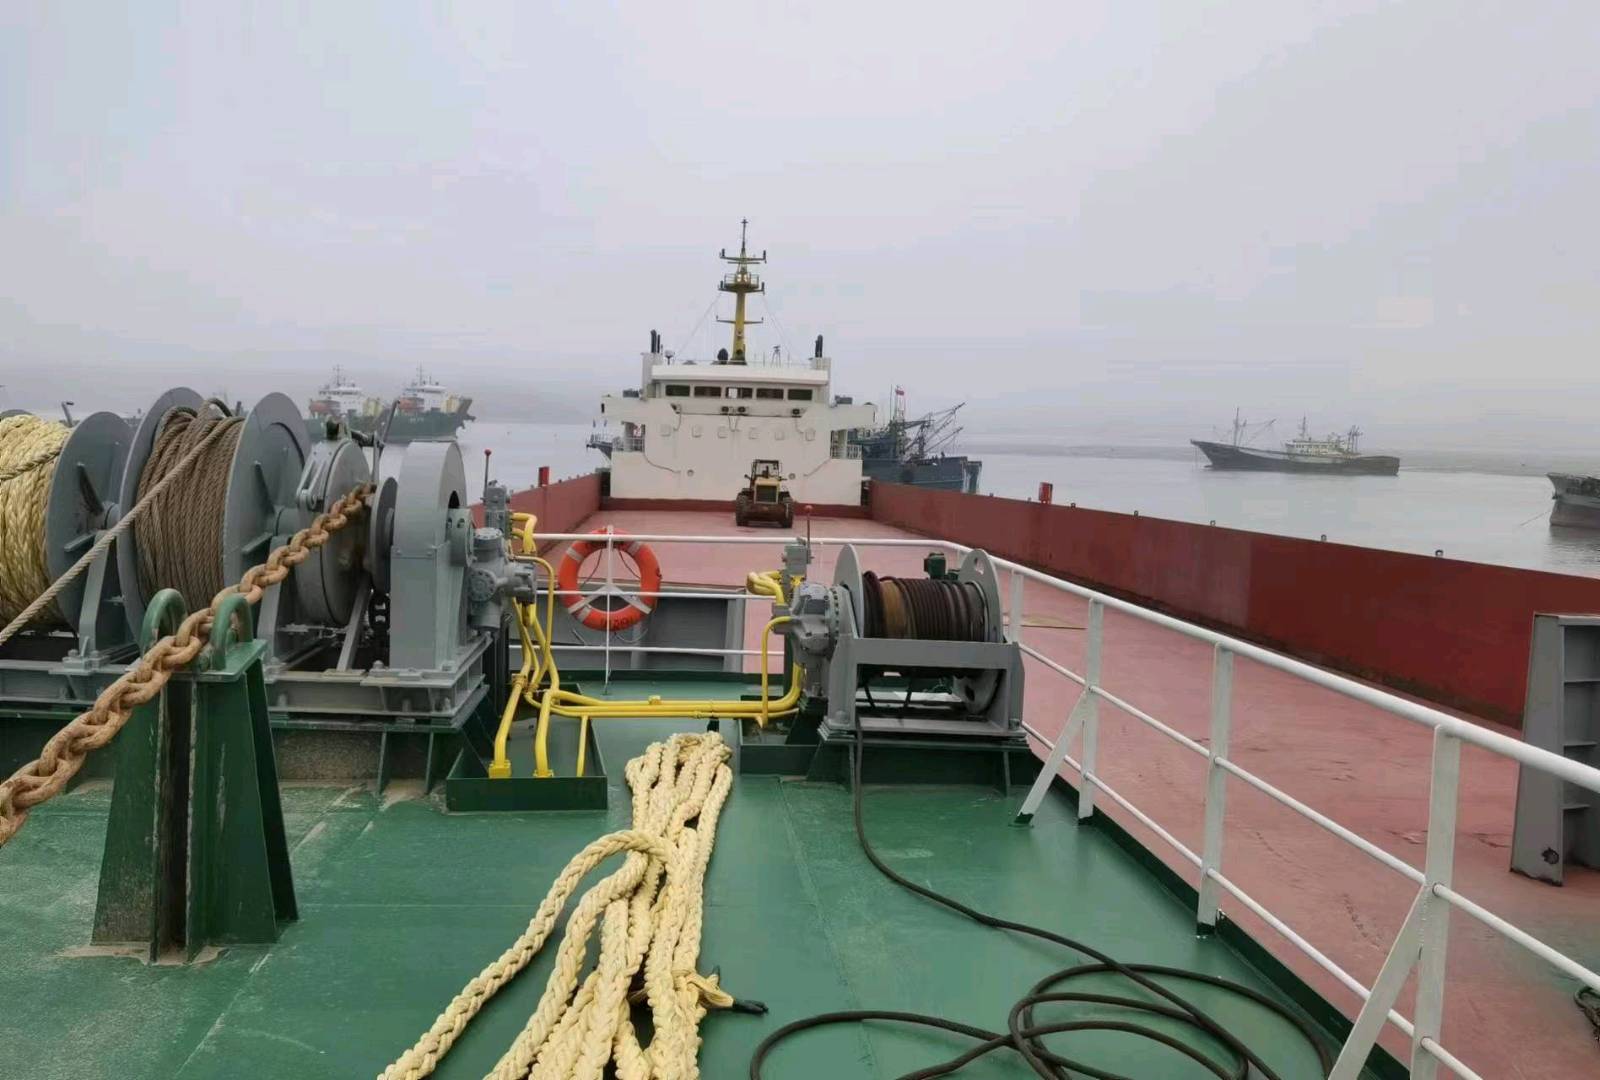 甲板驳船 — 驳船 交易 船舶交易,中国船舶交易网